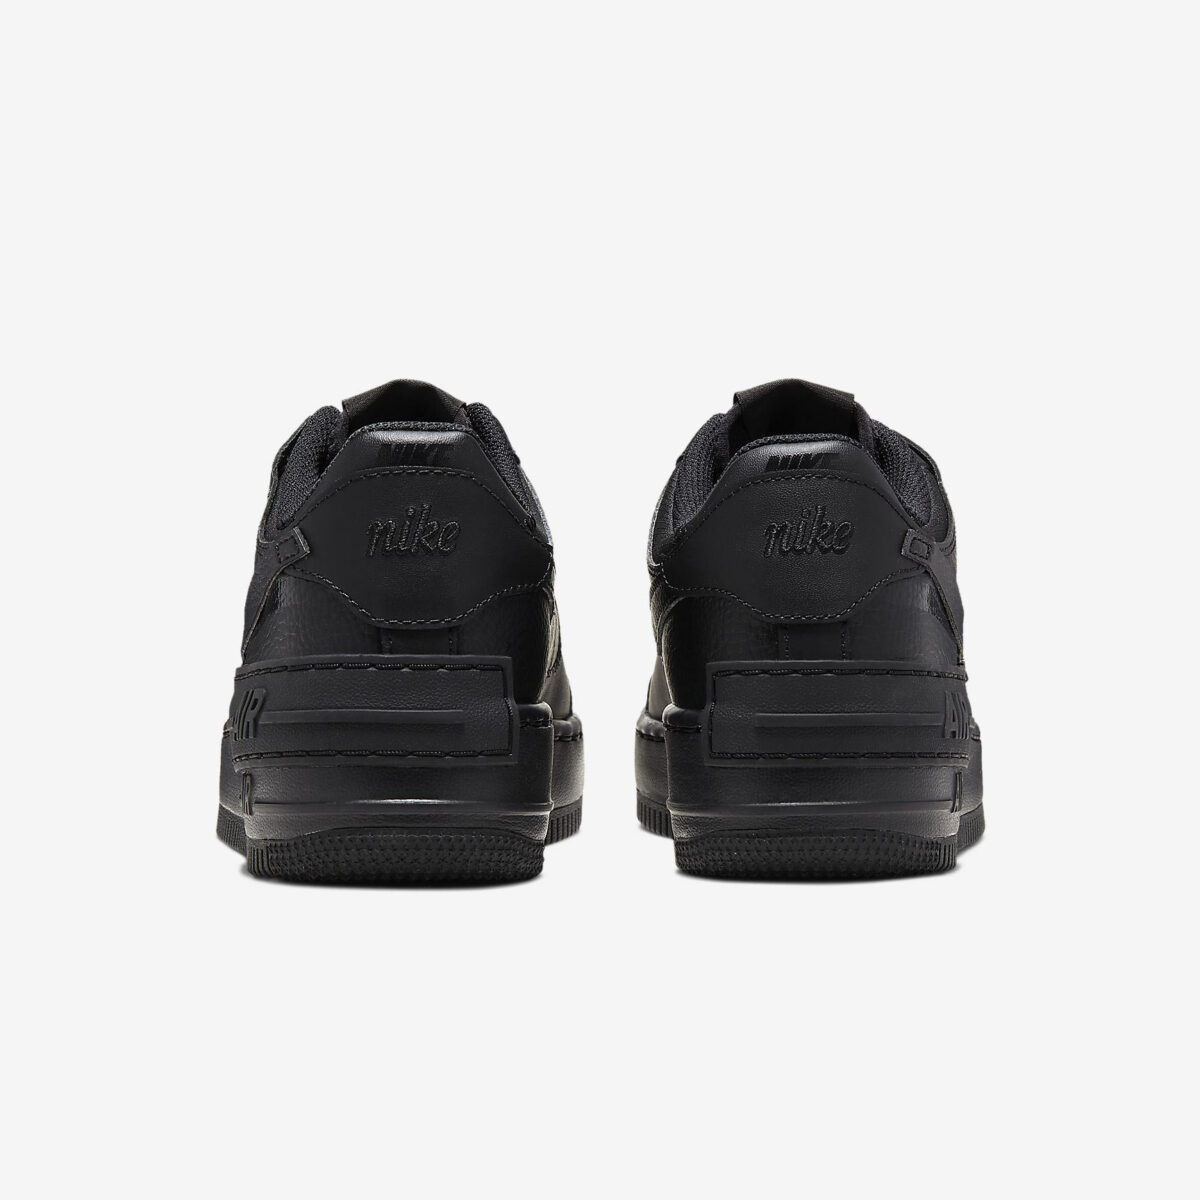 Damen Schuhe Nike Air Force 1 07 Shadow schwarz einkaufen